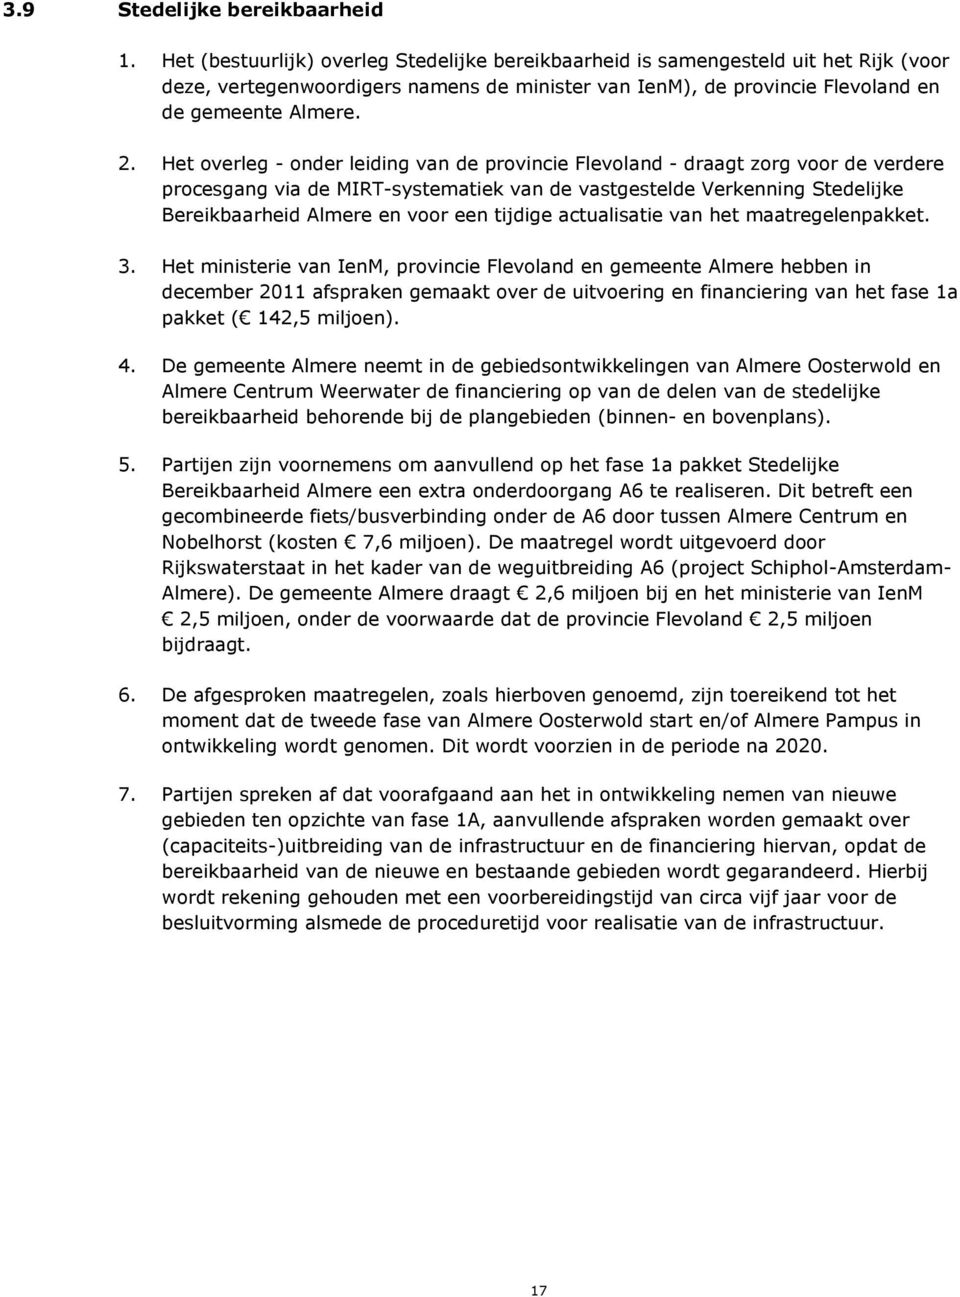 Het overleg - onder leiding van de provincie Flevoland - draagt zorg voor de verdere procesgang via de MIRT-systematiek van de vastgestelde Verkenning Stedelijke Bereikbaarheid Almere en voor een